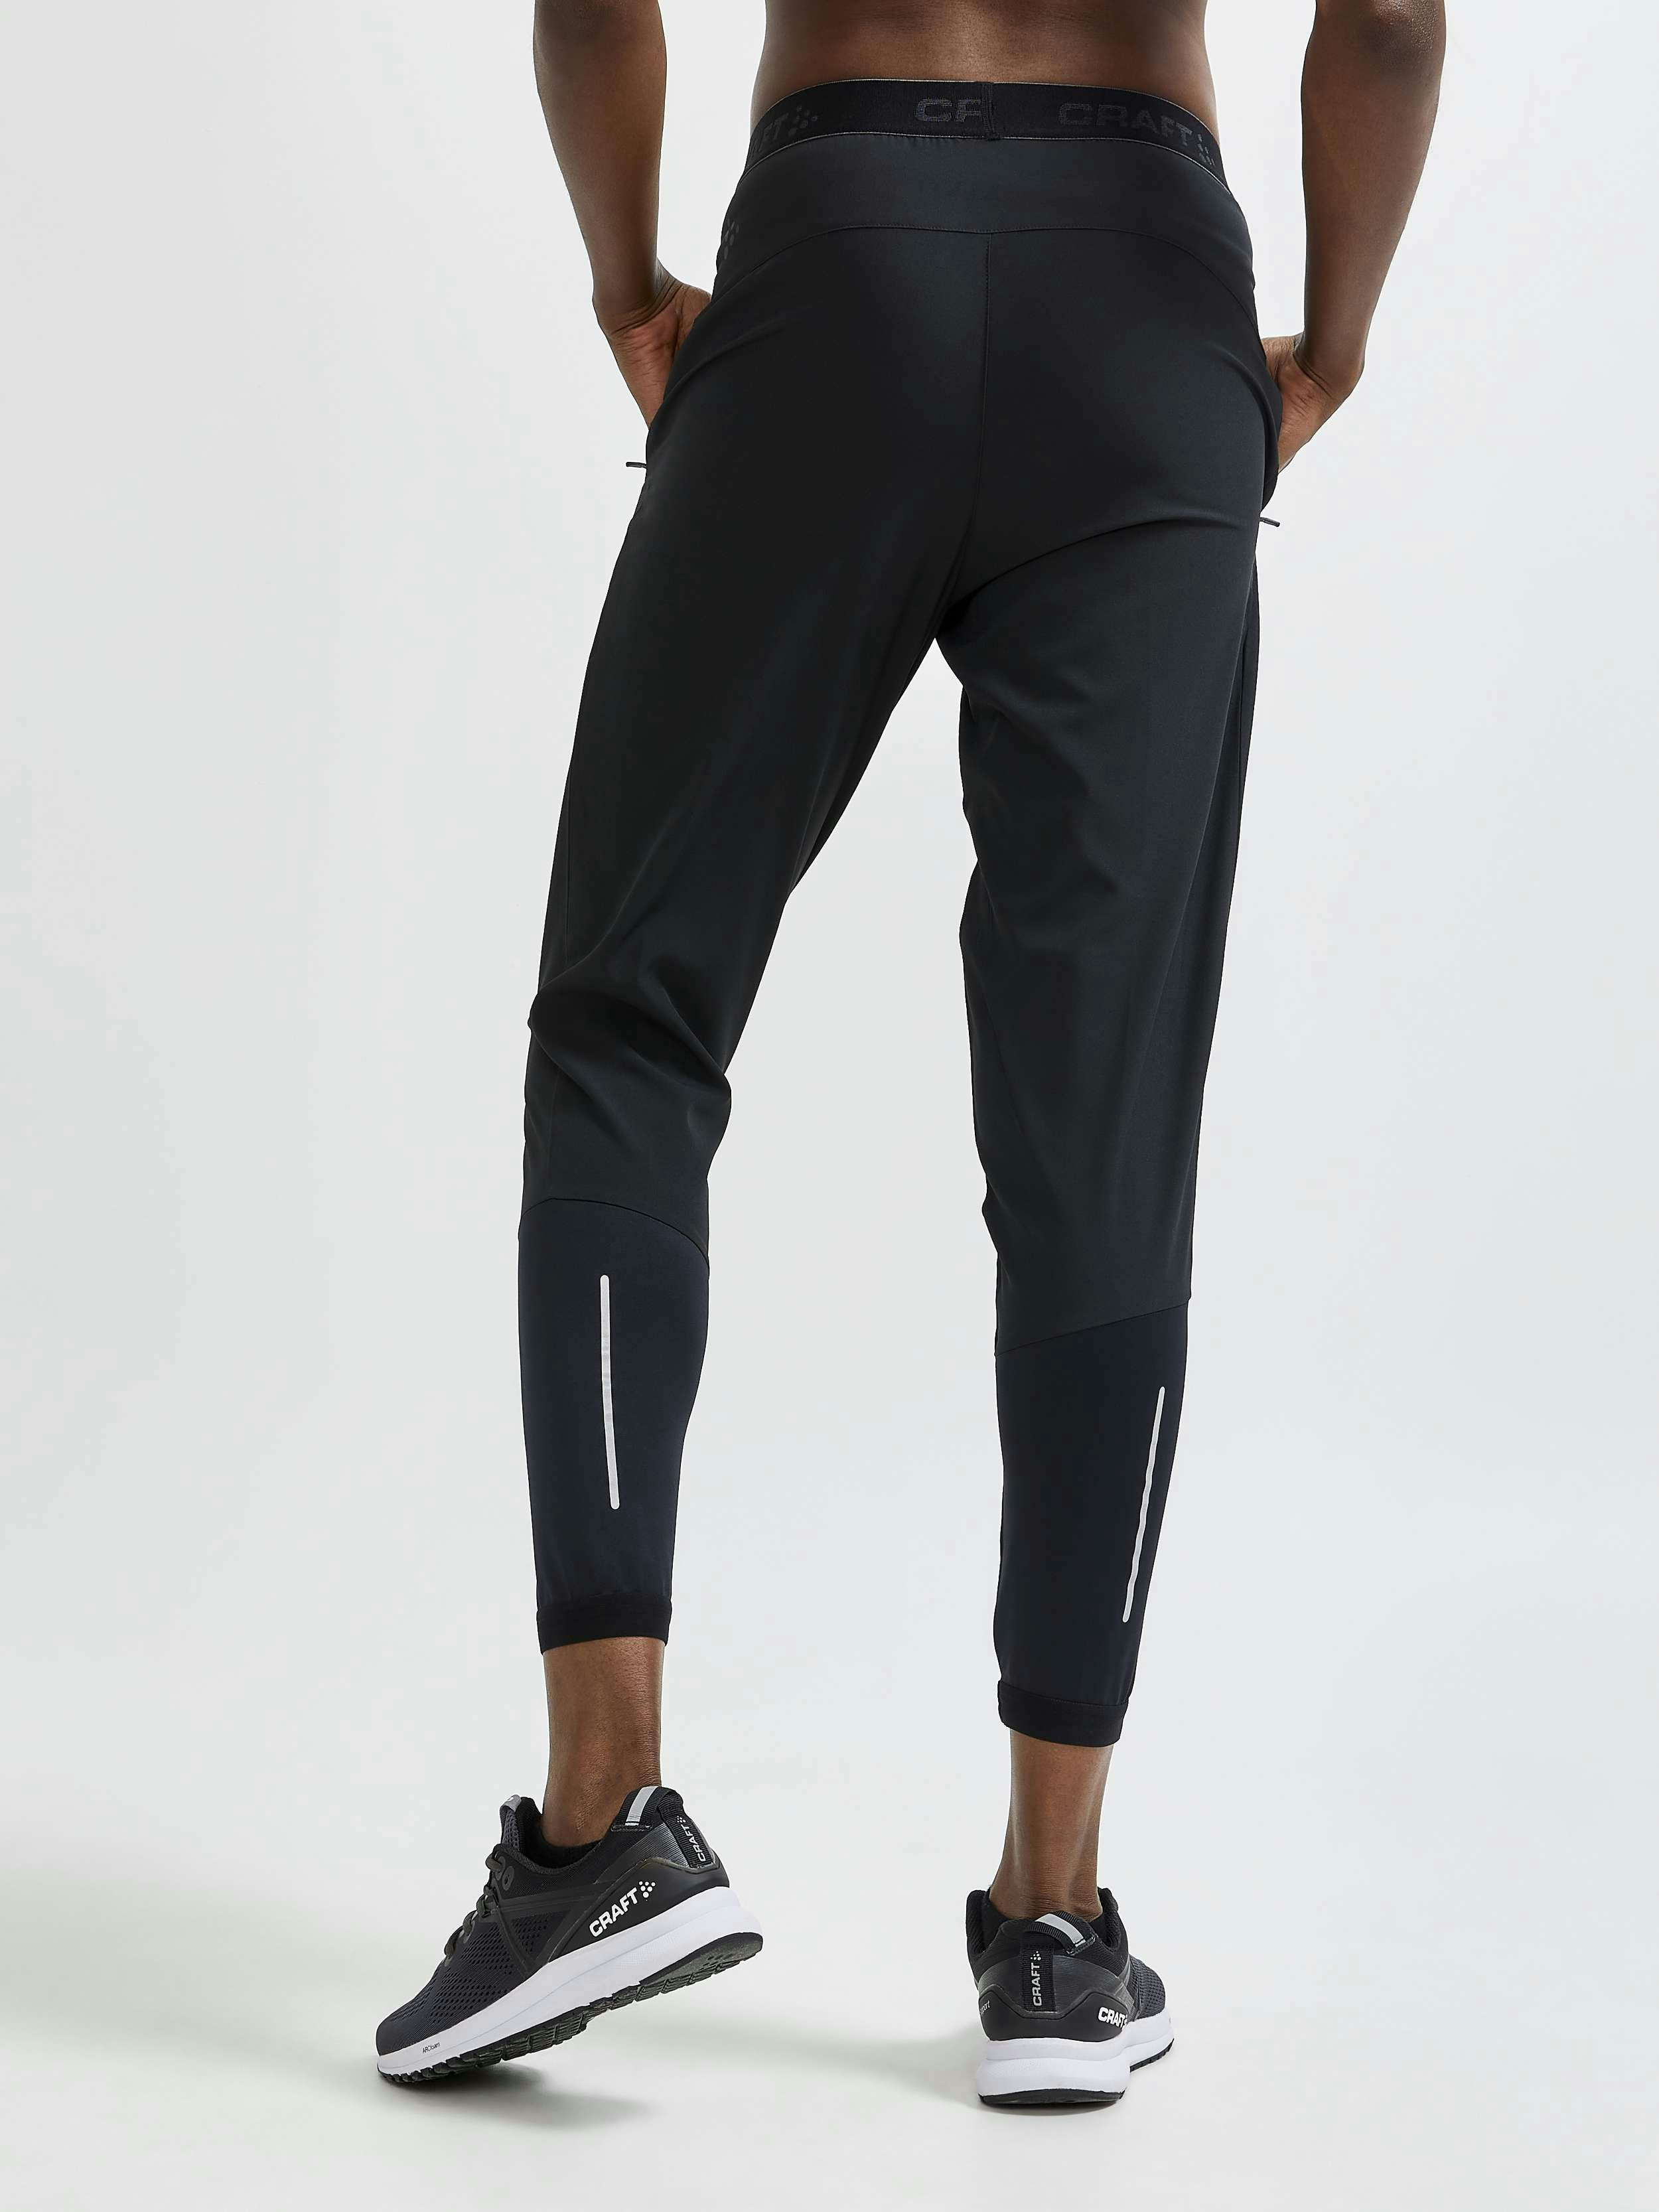 Nike Slim Fit Running Pants | SidelineSwap